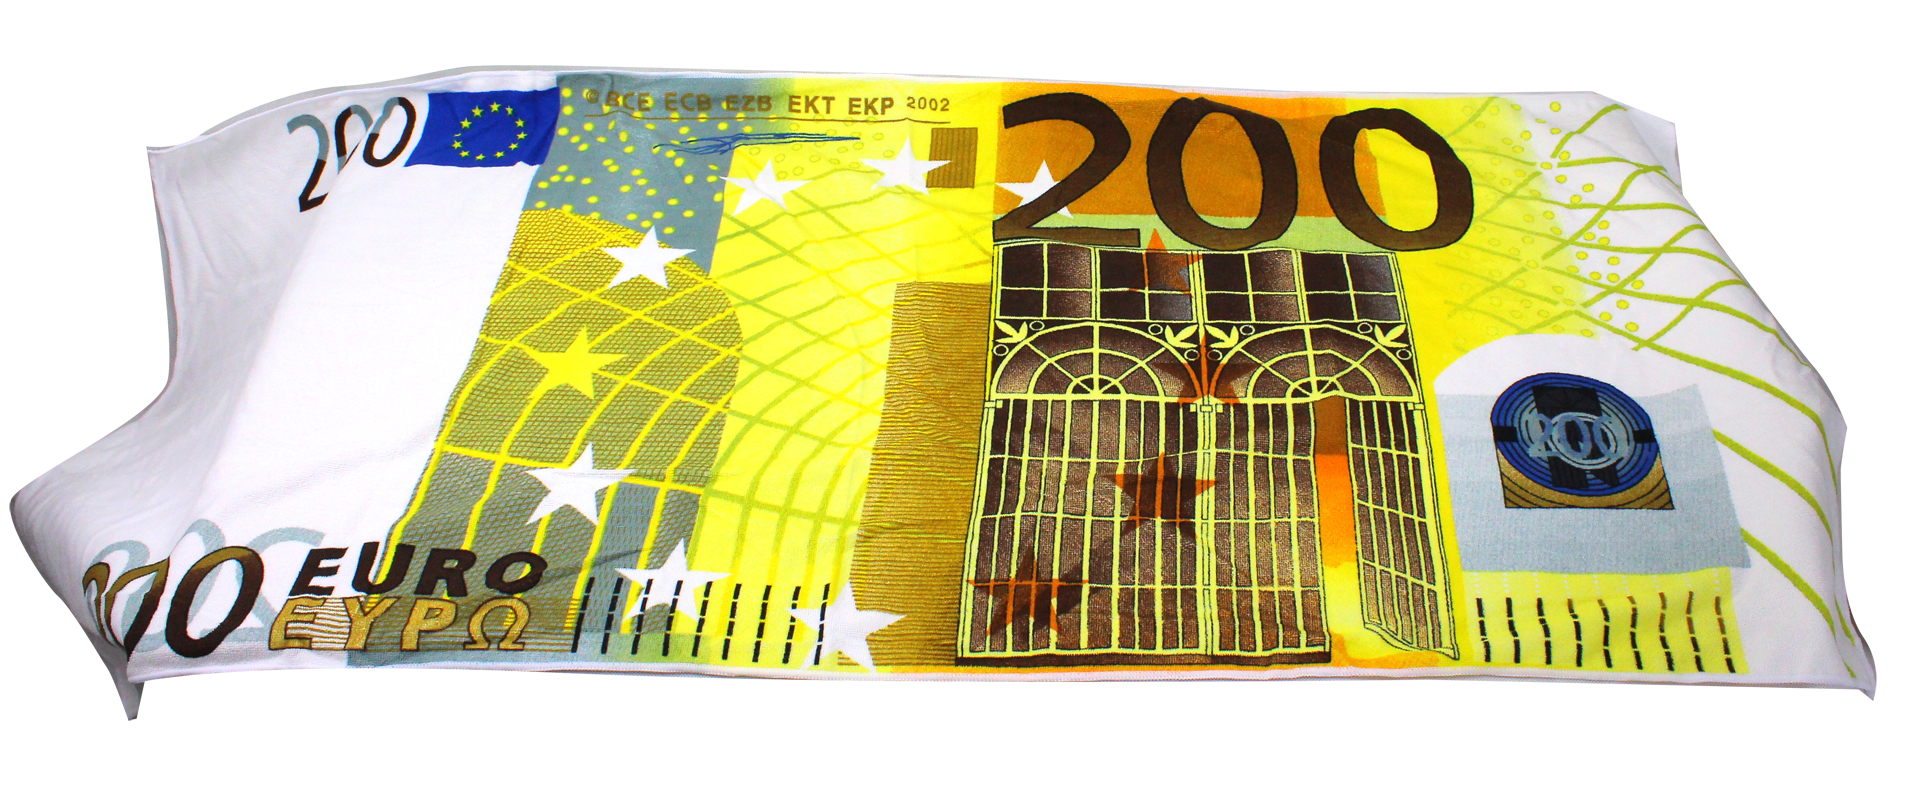 70 x 140 cm Badetuch Handtuch Strandtuch Badetuch mit Geld Motiv Saunatuch Euro 